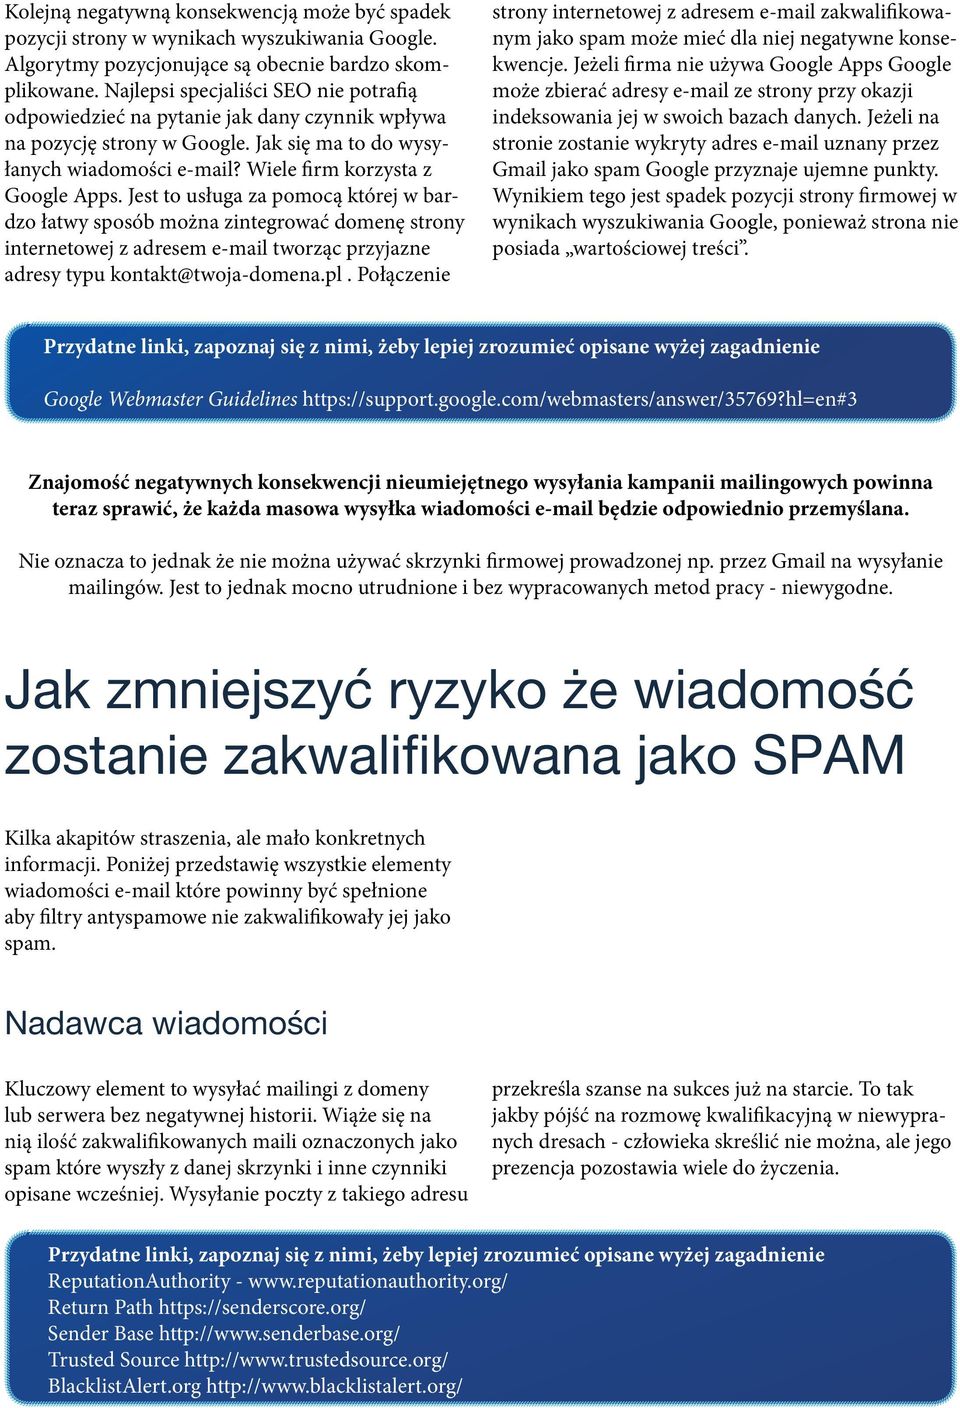 Jest to usługa za pomocą której w bardzo łatwy sposób można zintegrować domenę strony internetowej z adresem e-mail tworząc przyjazne adresy typu kontakt@twoja-domena.pl.